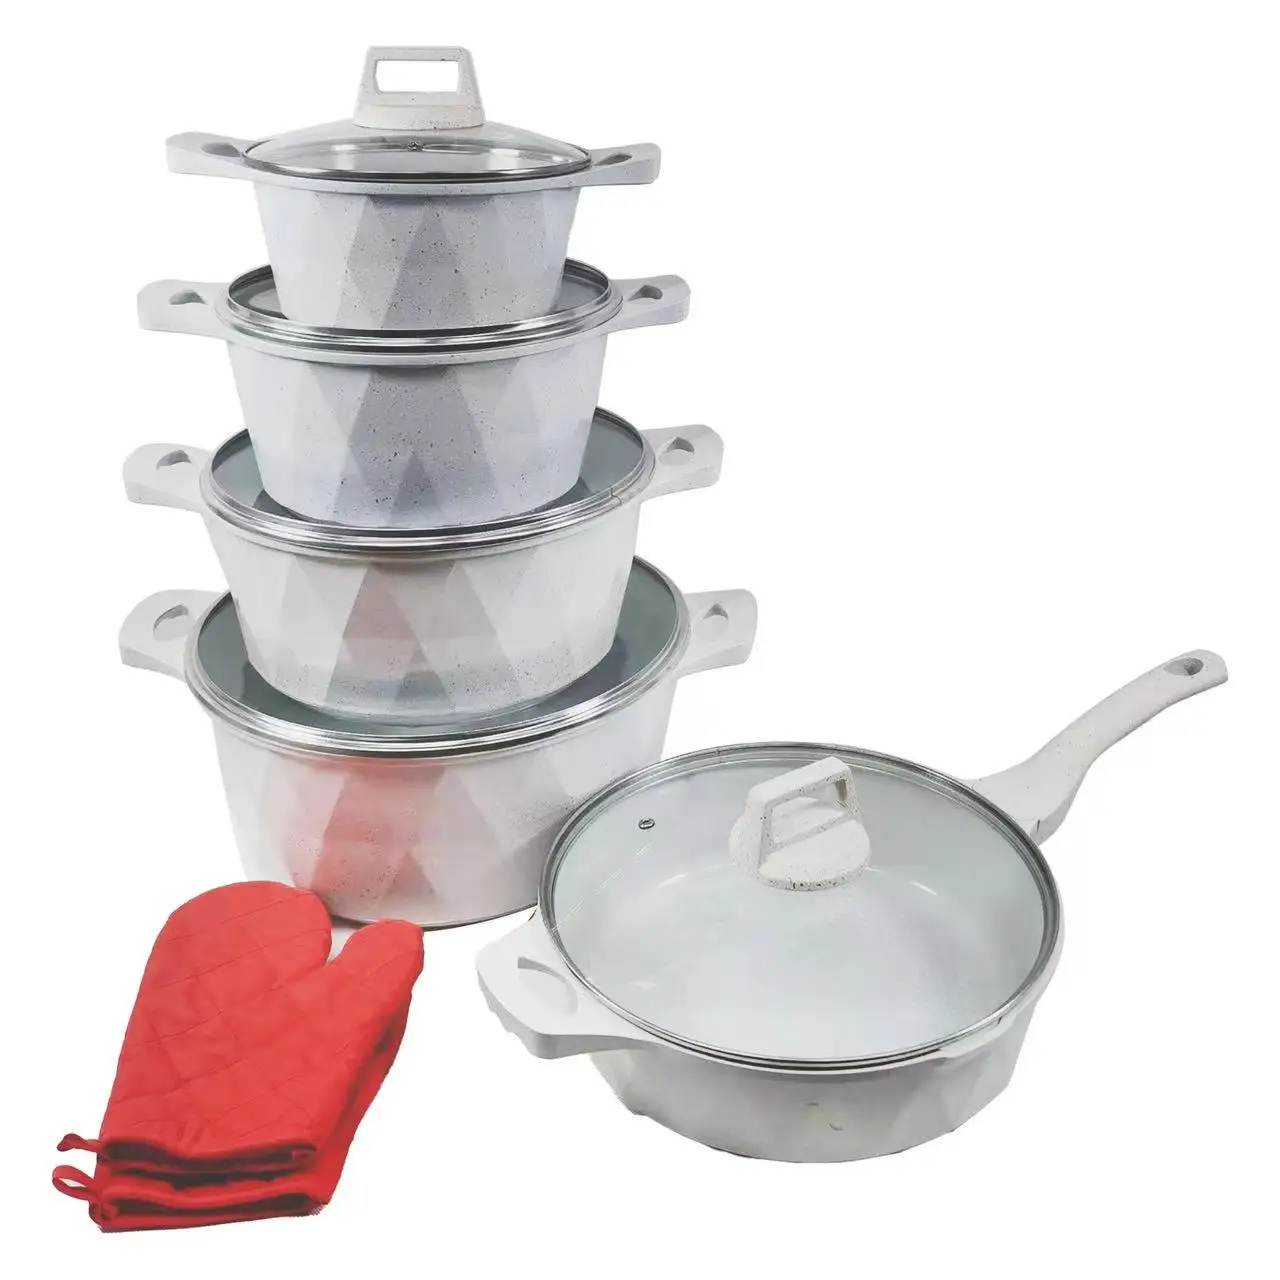 High Quality 12pcs  Non Stick Aluminium Cookware Sets Fry Pans Casserole Pots Set with Removable Handle